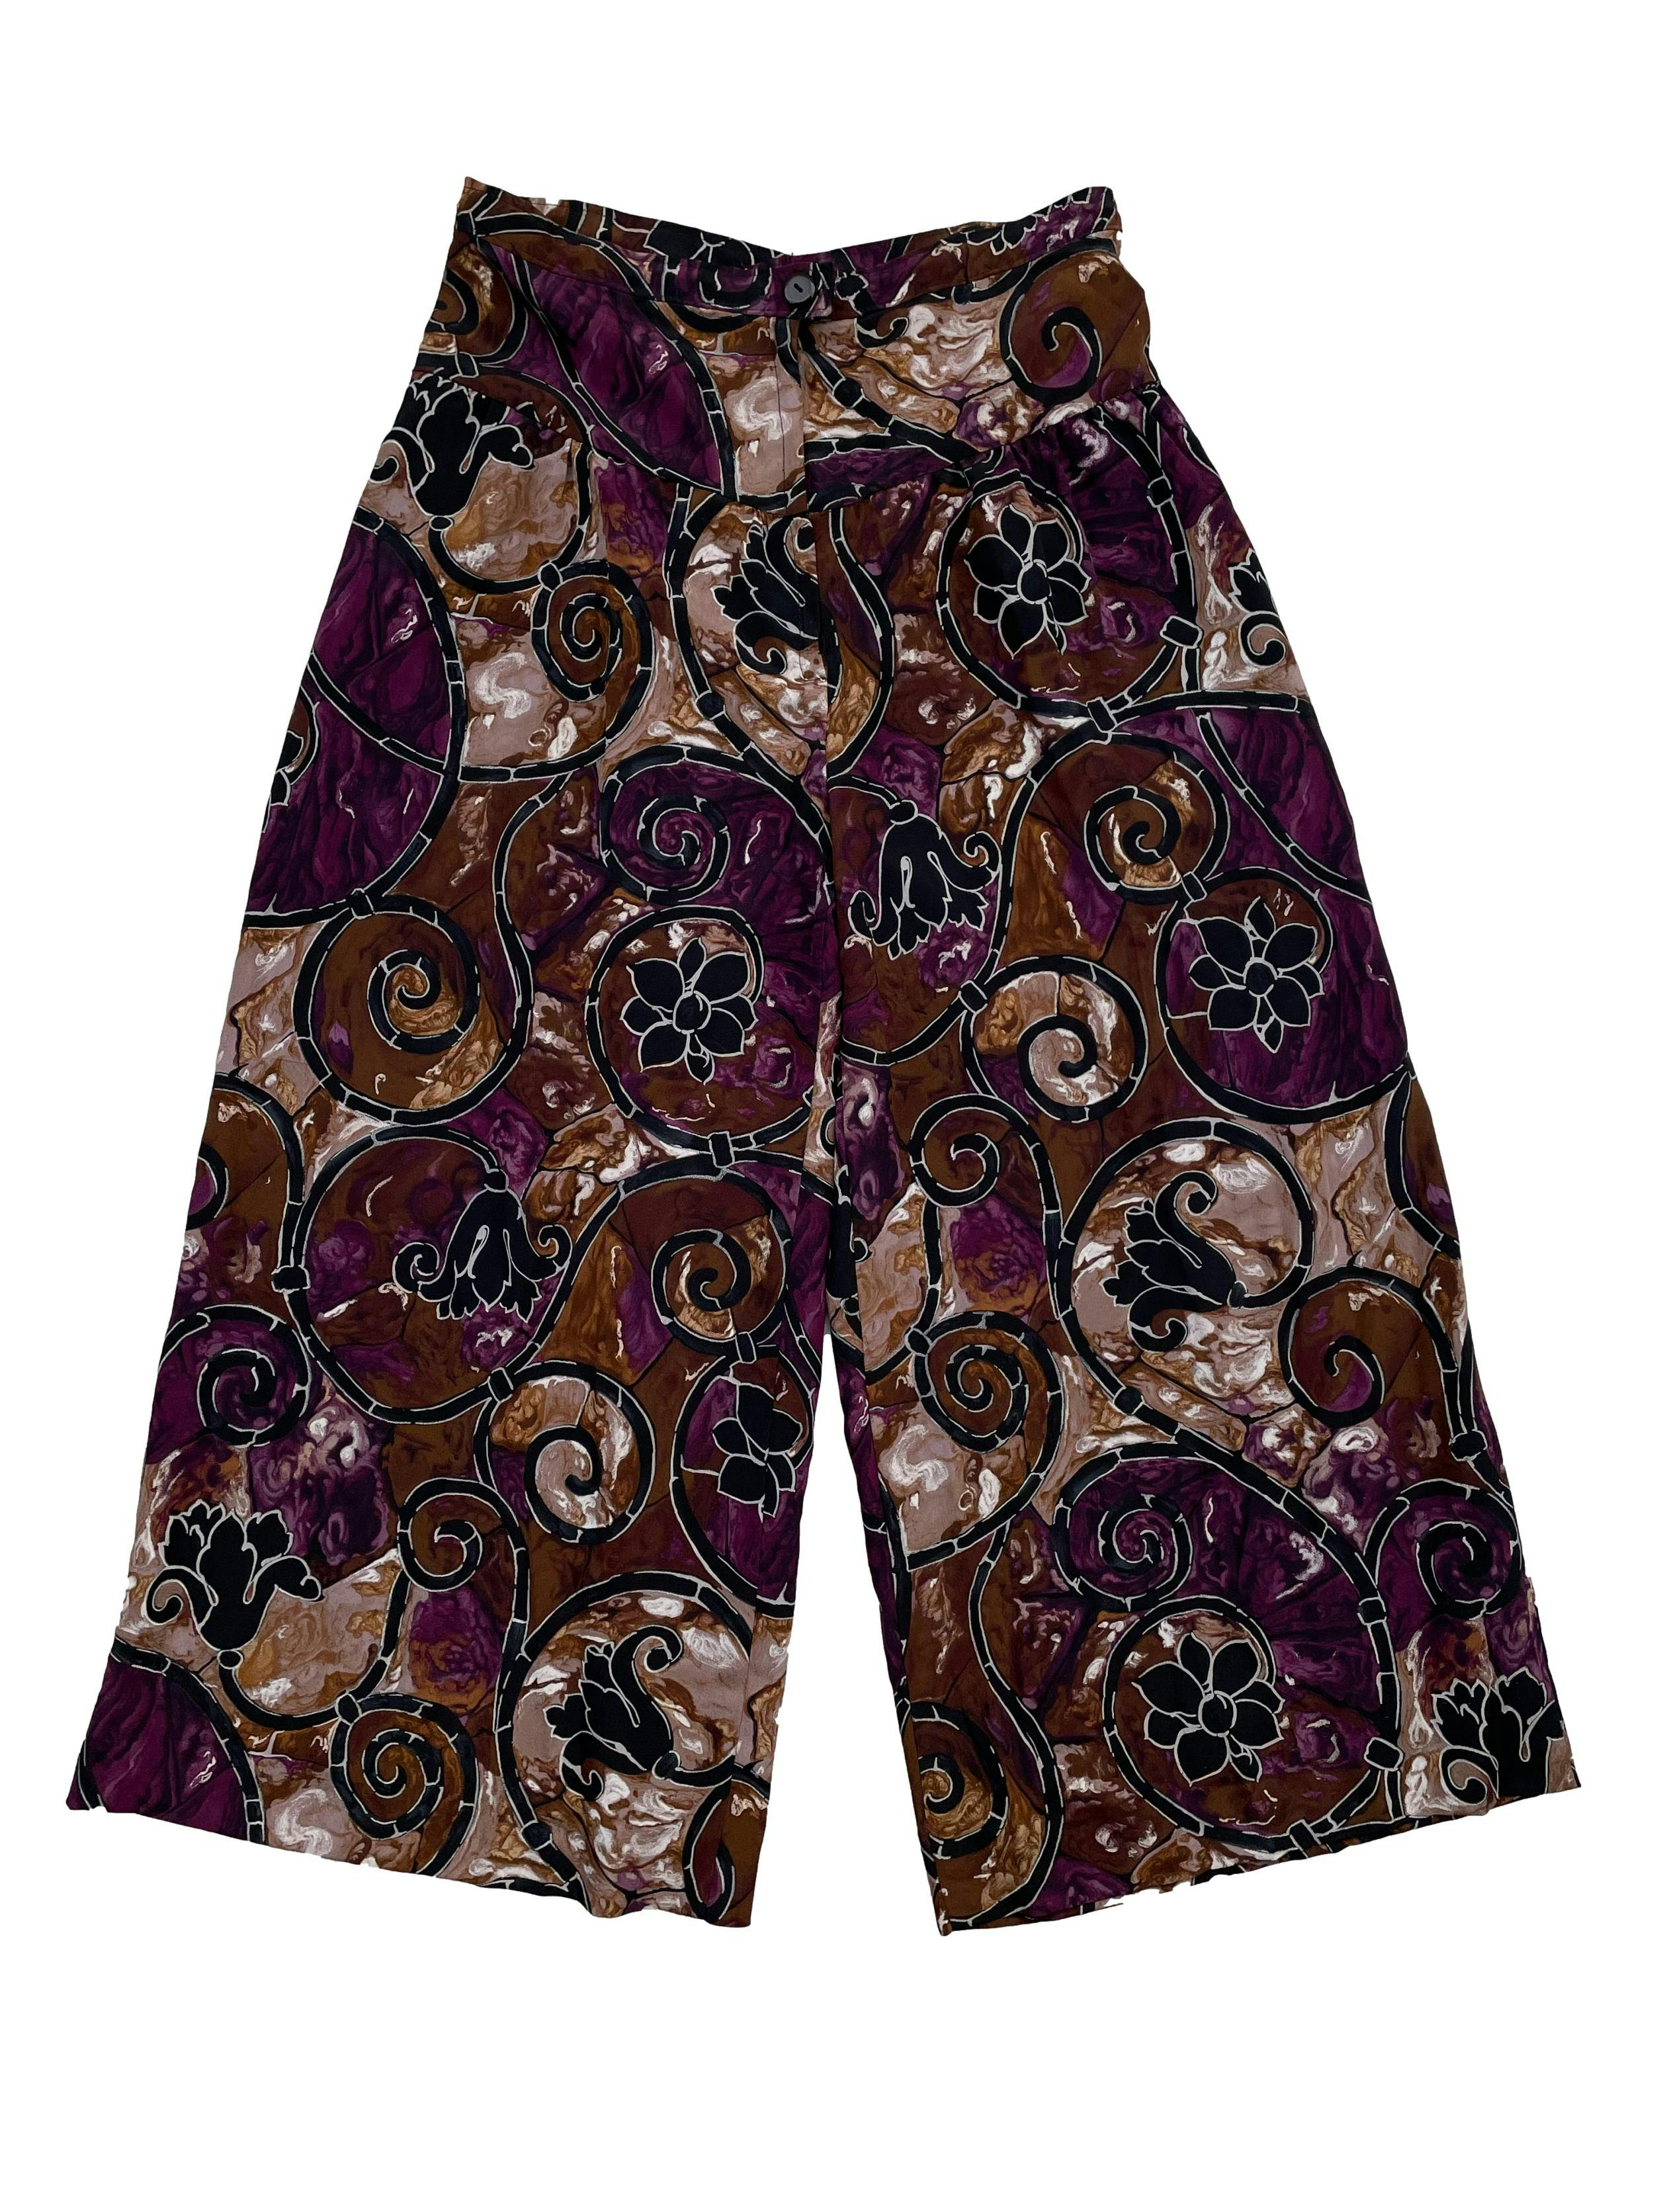 Pantalón culotte con estampado vintage en morado ,negro y marrón, cierre y botón en delantero. Cintura 74cm, Largo 88cm.